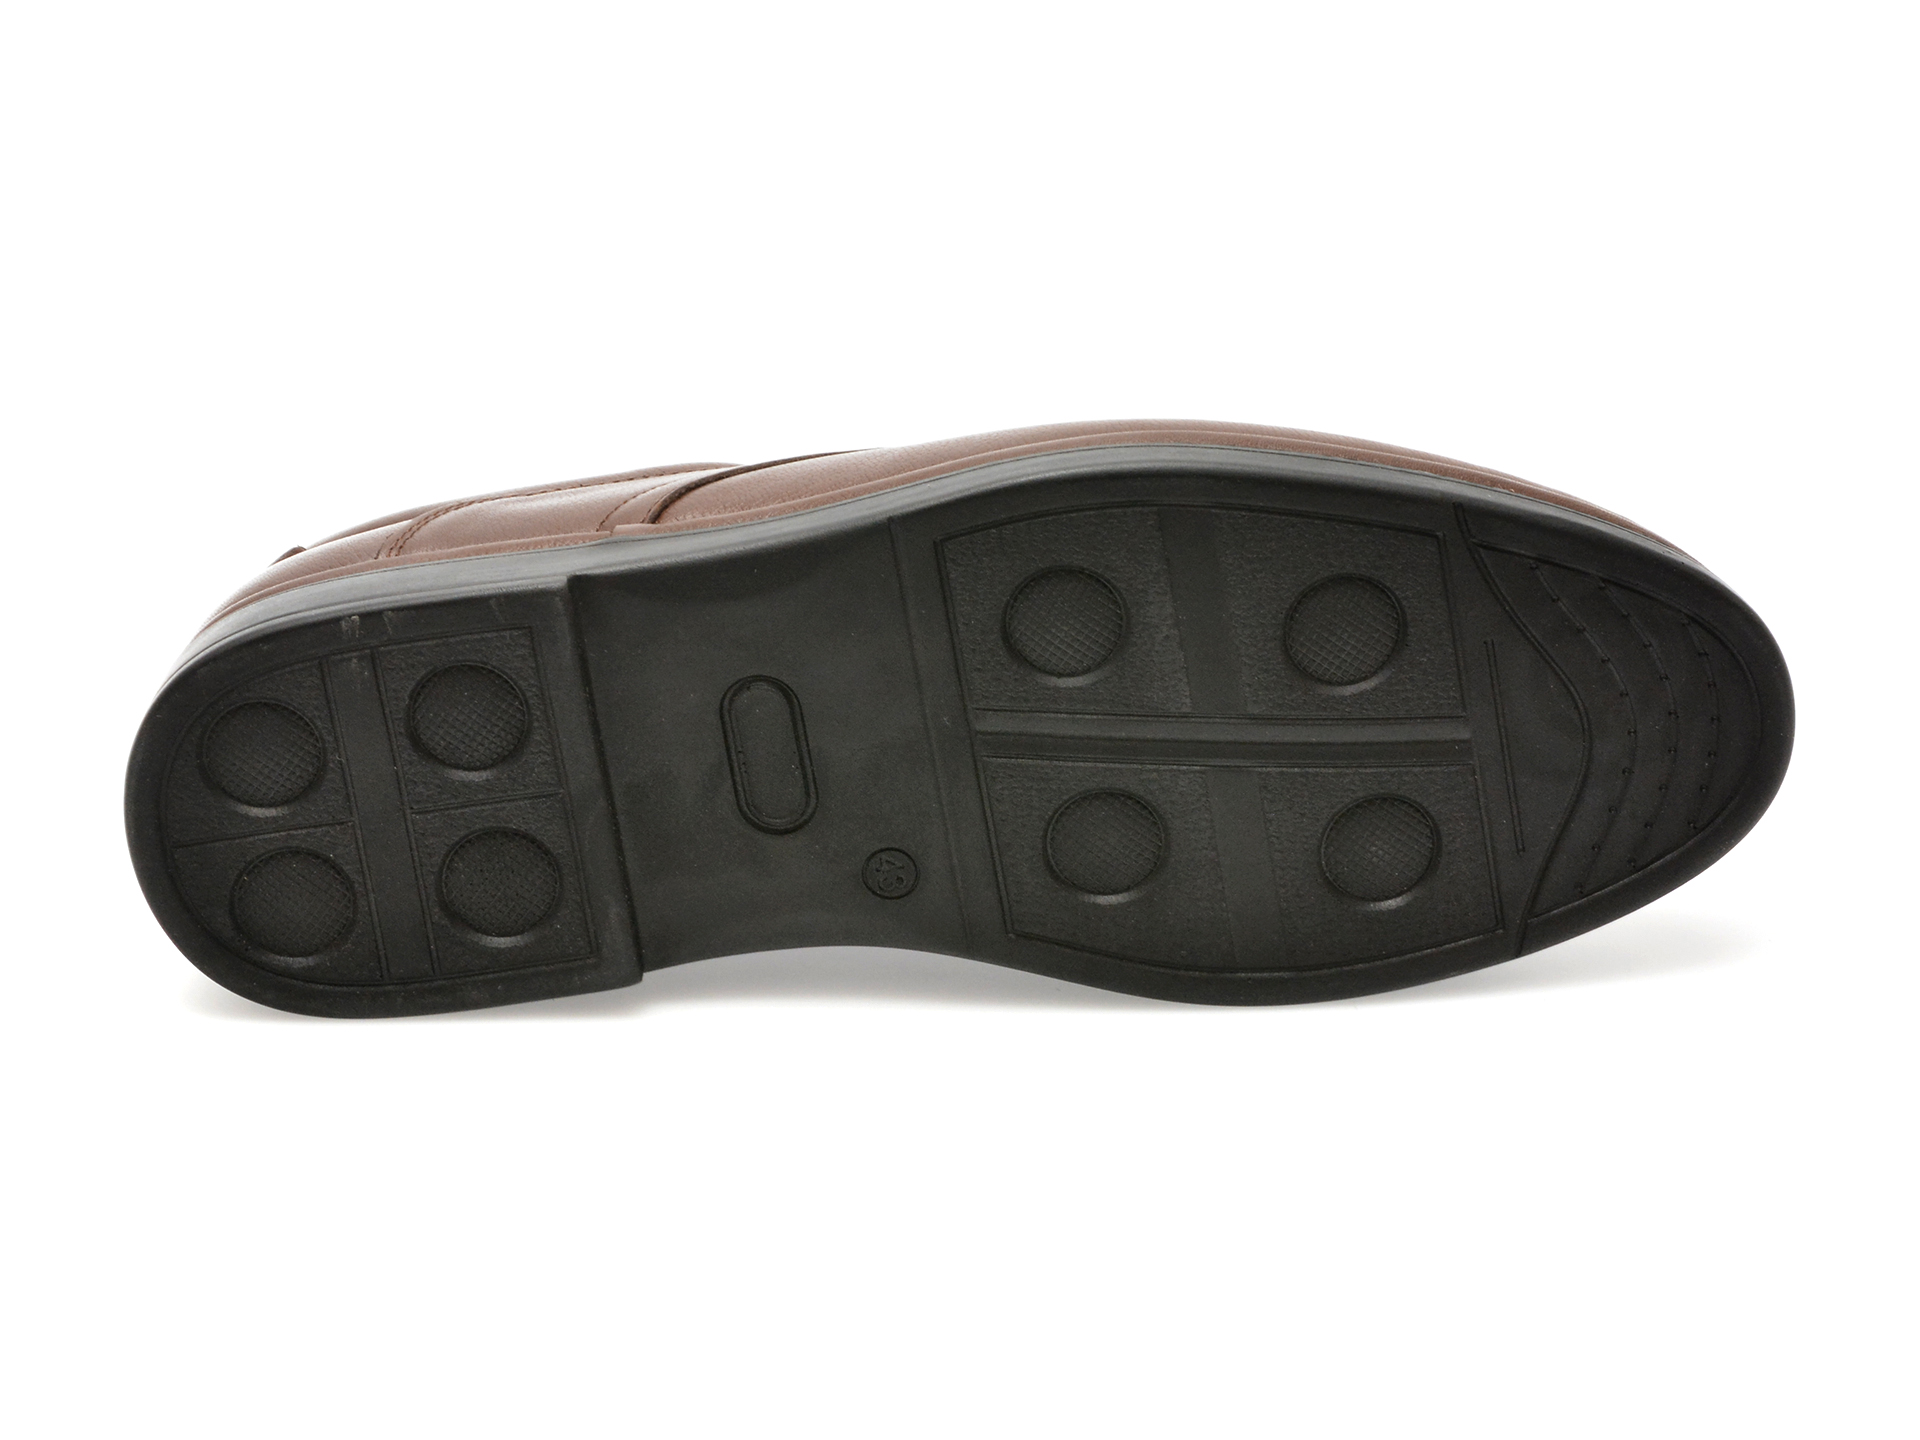 Pantofi AXXELLL maro, SH303, din piele naturala